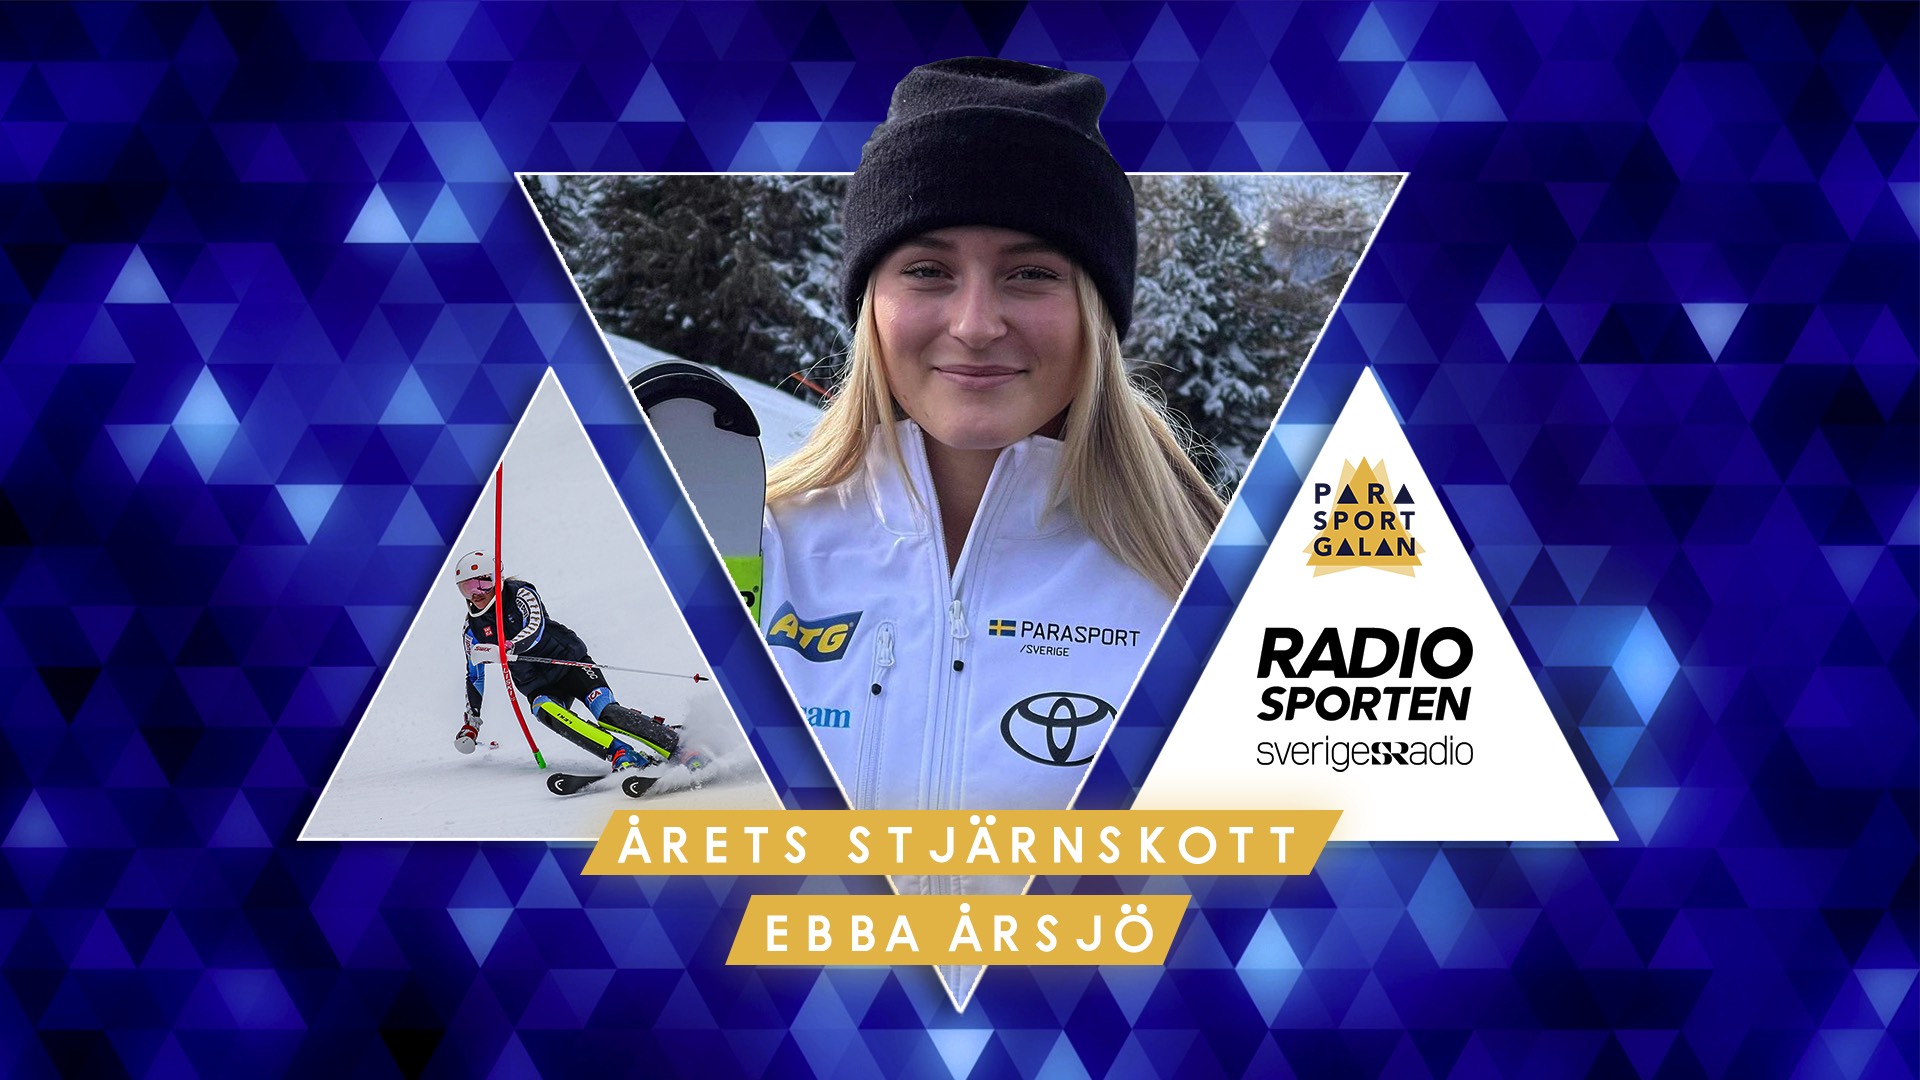 Ebba Årsjö - Årets stjärnskott radiosporten